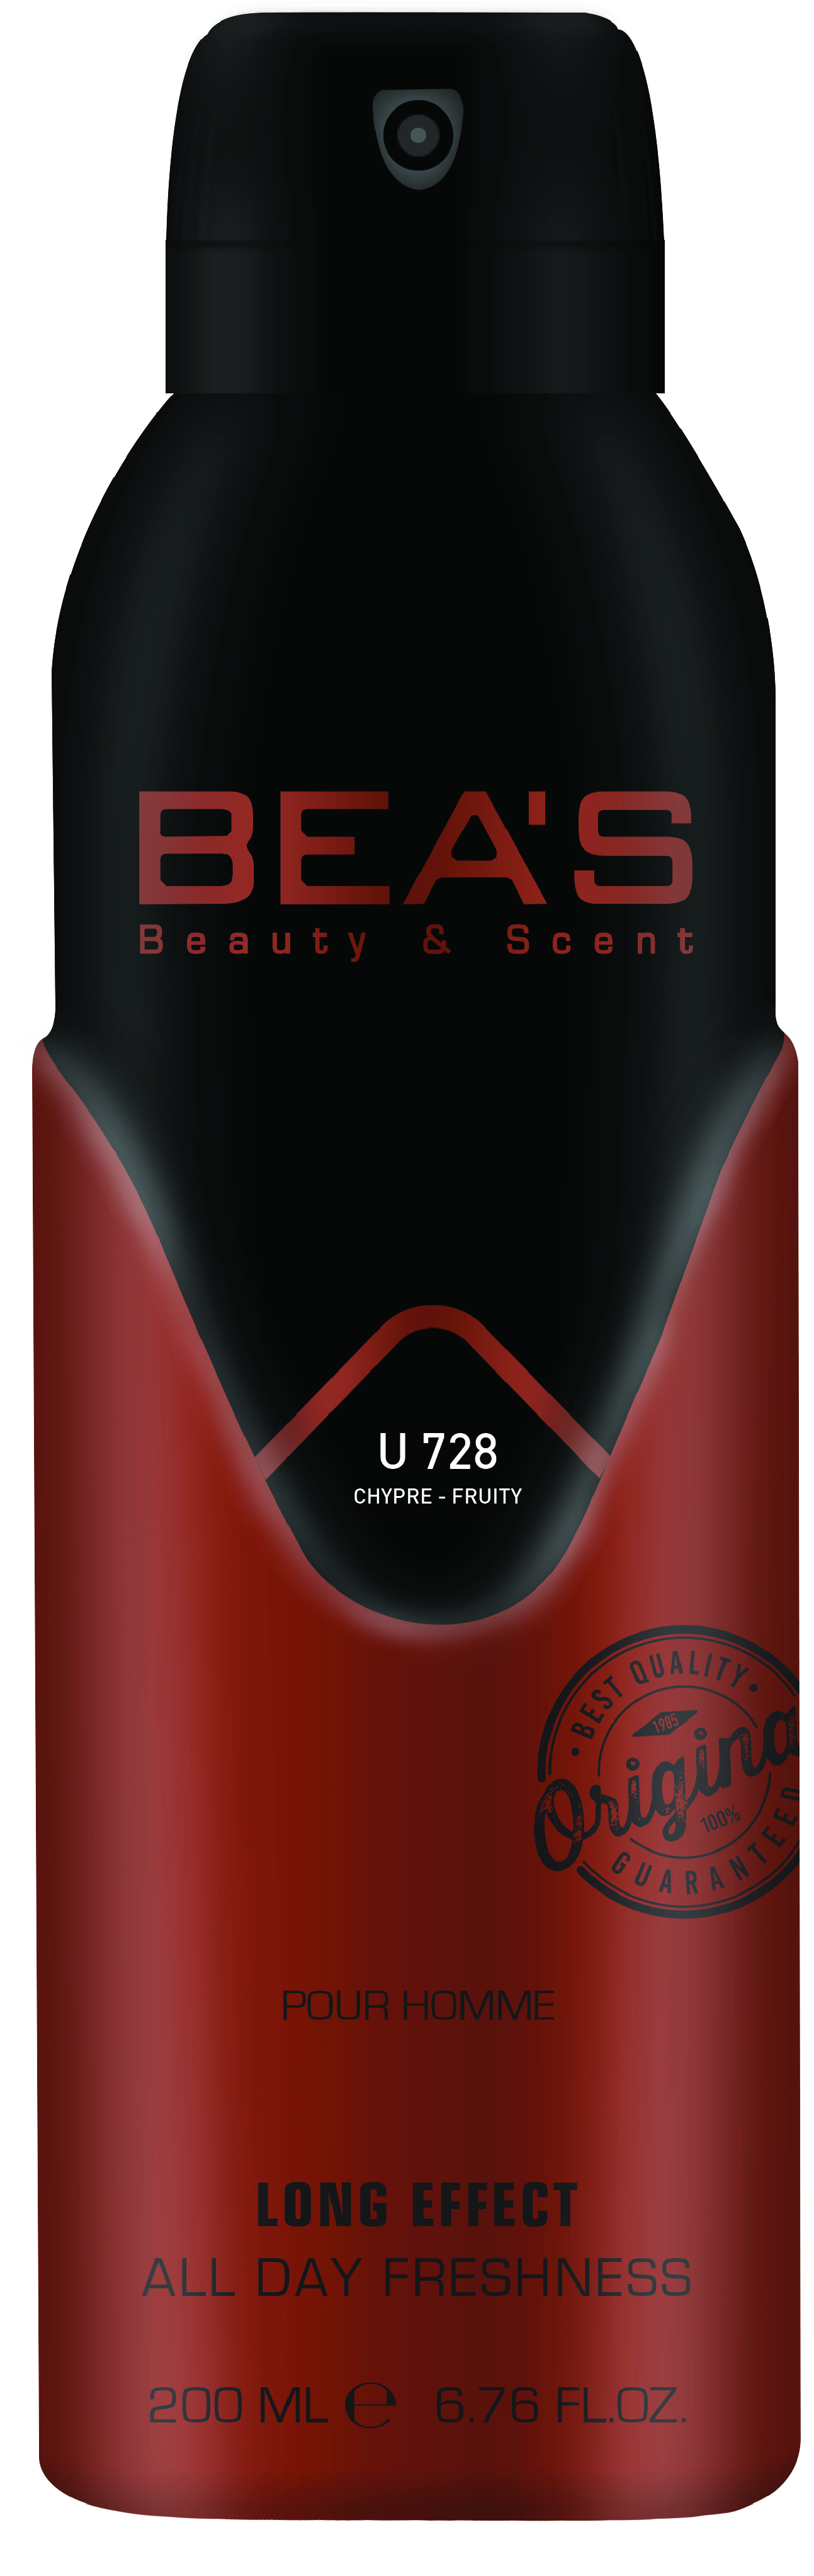 Купить Парфюмированный дезодорант Beas TT Kirke Unisex 200 мл U 728, Номерная парфюмерия